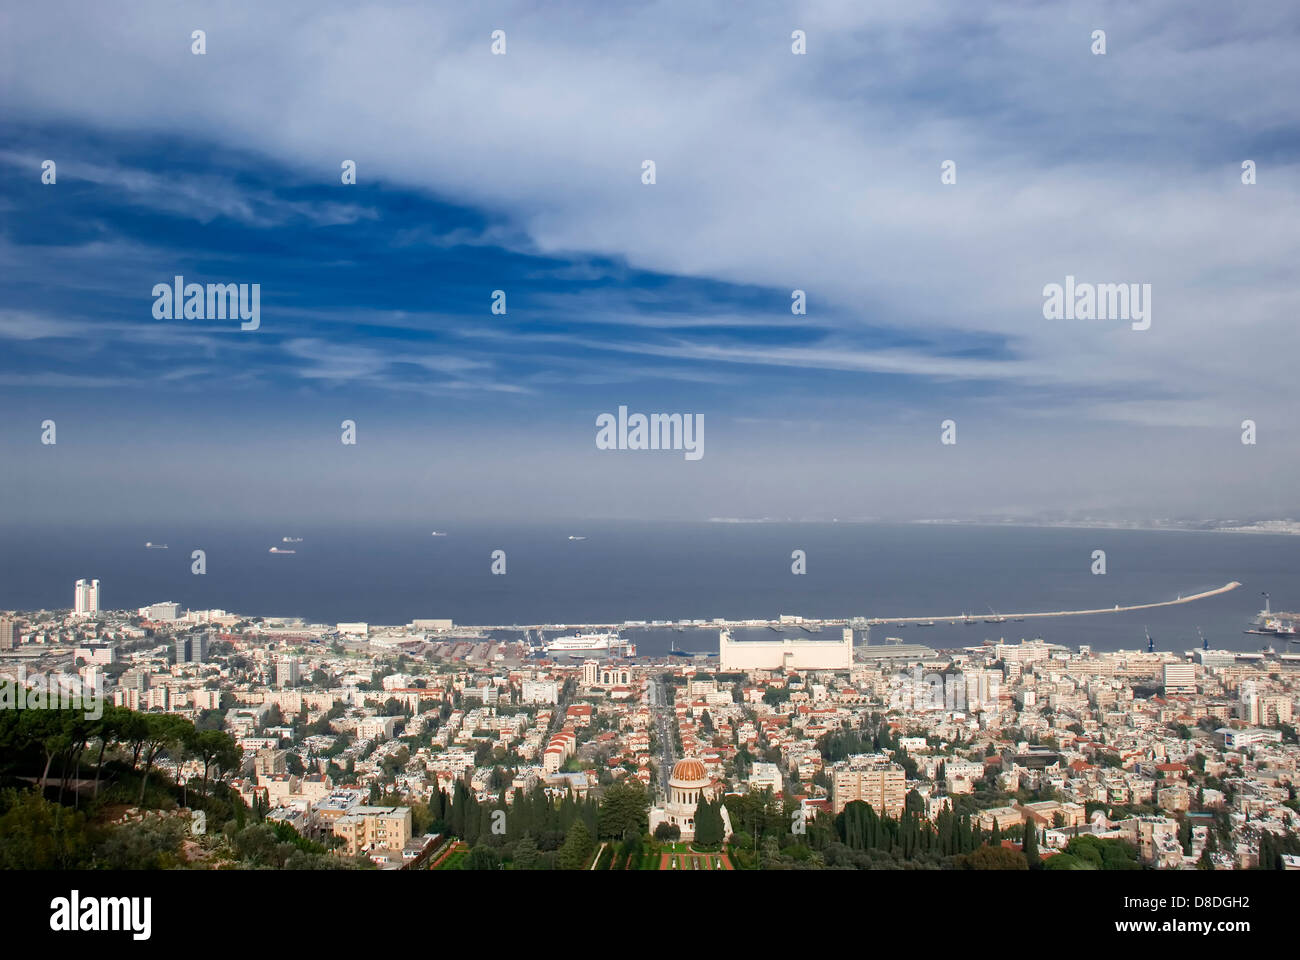 Panorama of Haifa city from Israel Stock Photo